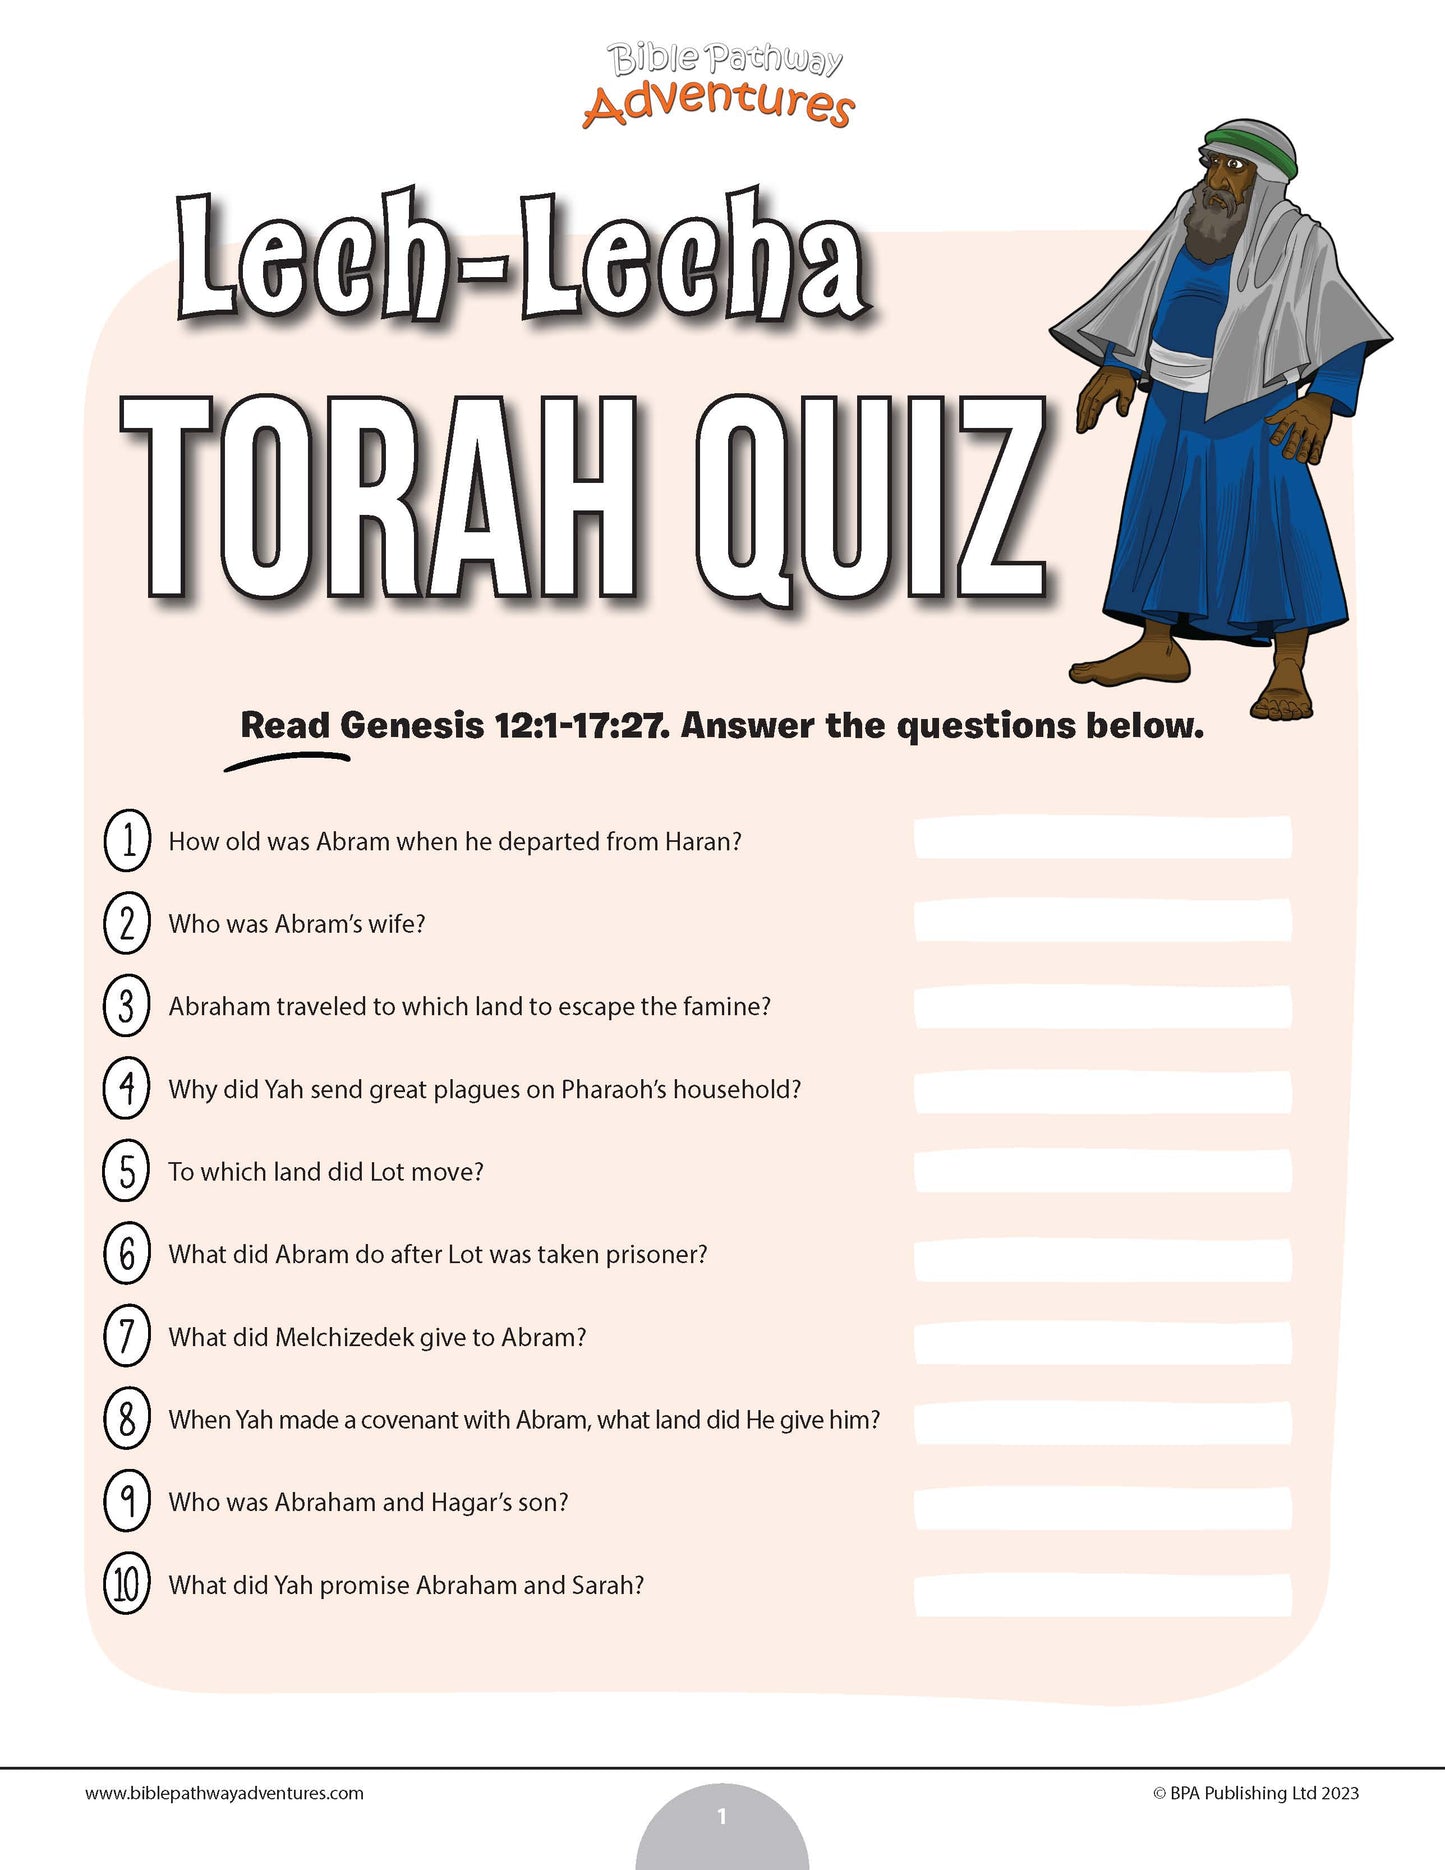 Lech-Lecha Torah quiz